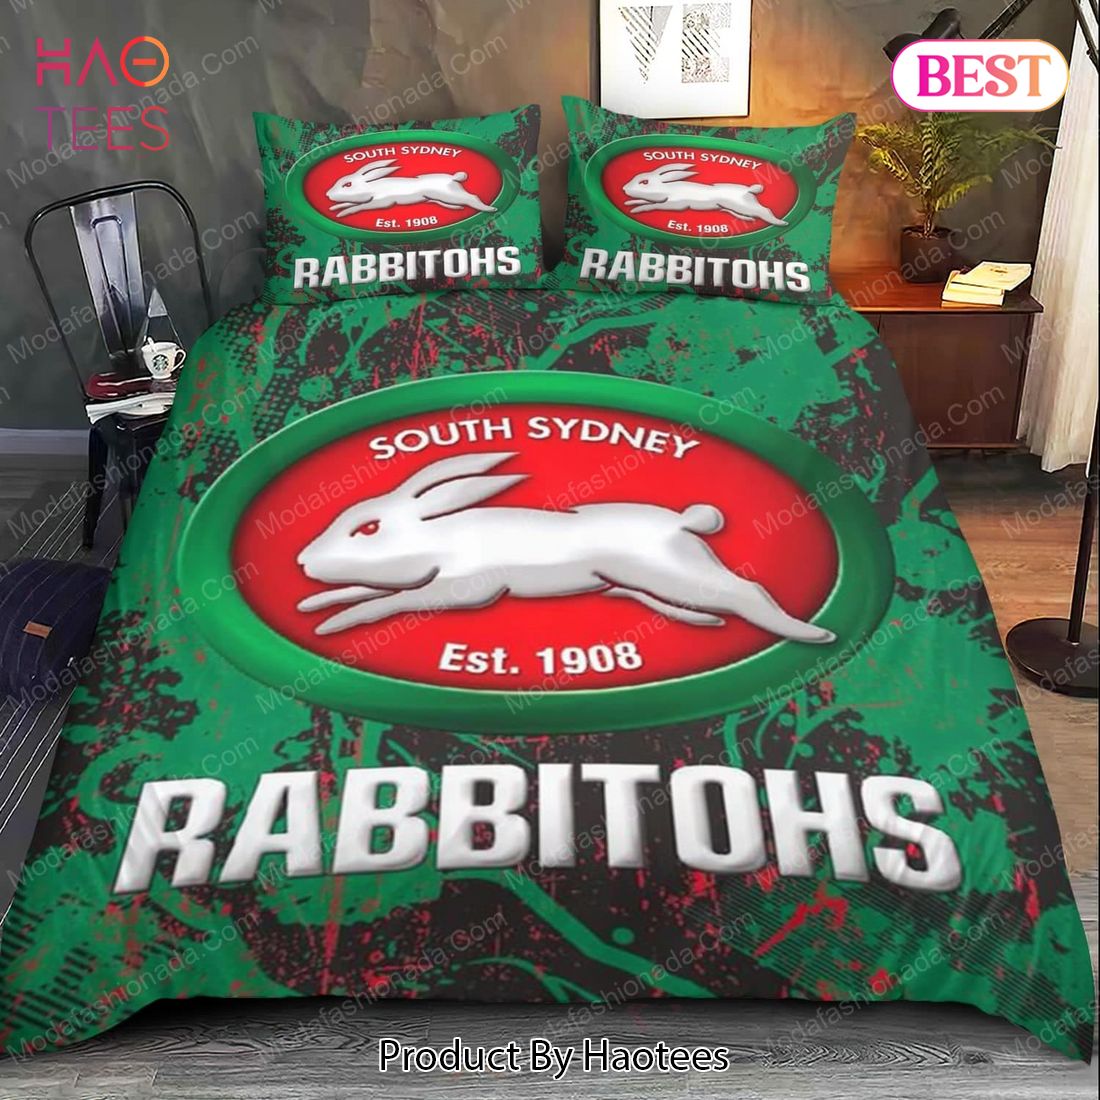 Buy South Sydney Rabbitohs Bedding Sets Bed Sets, Bedroom Sets, Comforter Sets, Duvet Cover, Bedspread